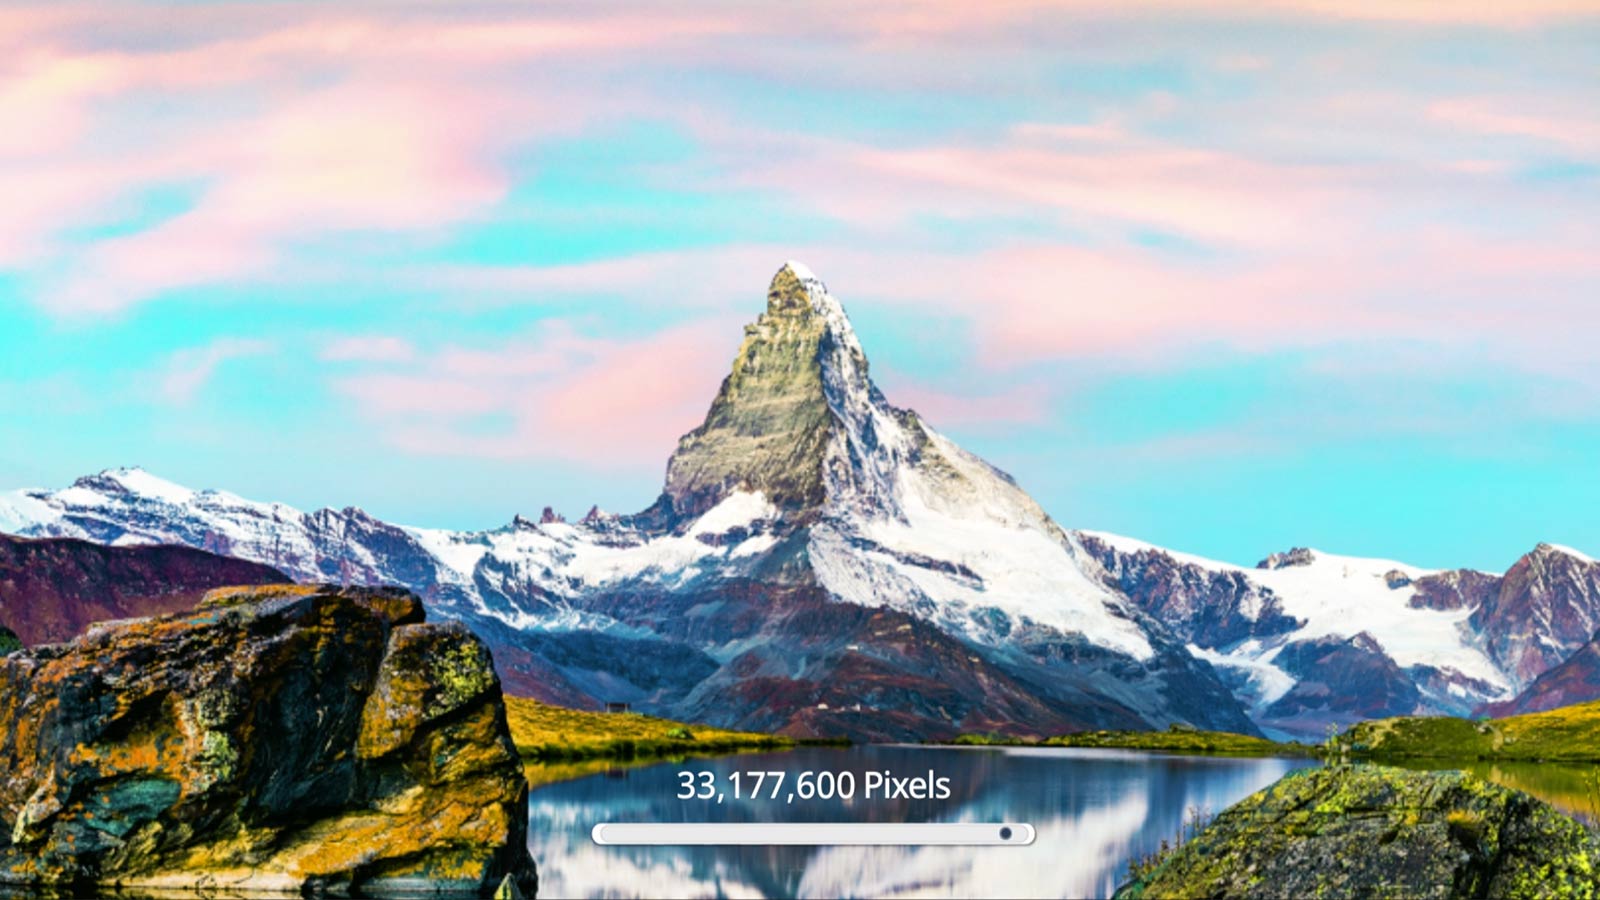 Gorski prizor, ki kaže izboljšanje kakovosti slike, saj se število slikovnih pik poveča na 33.177.600 v ločljivosti 8K (predvajaj video).